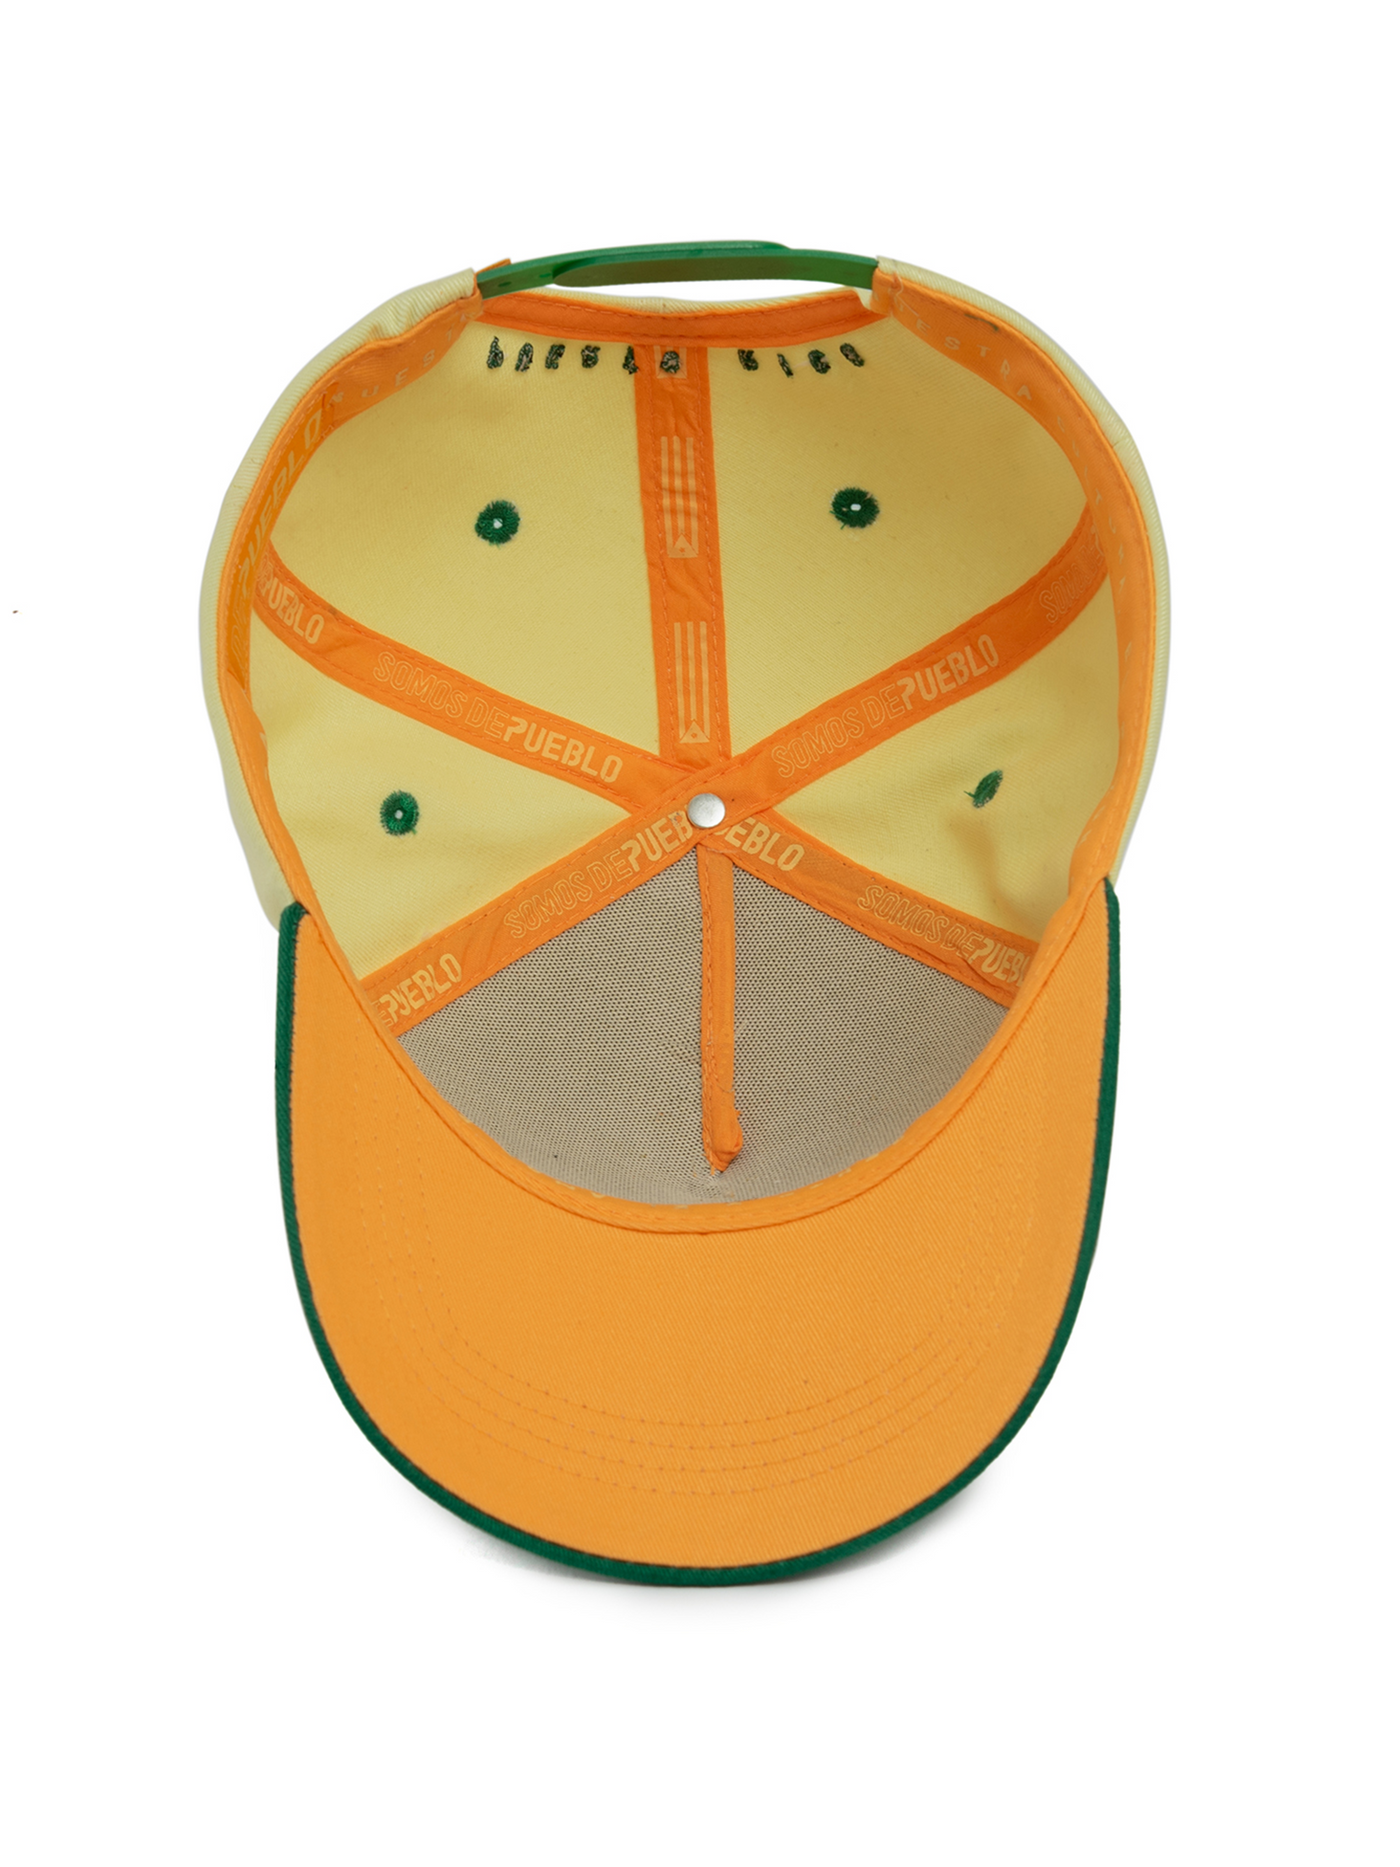 De Pueblo Icon - Baseball Cap